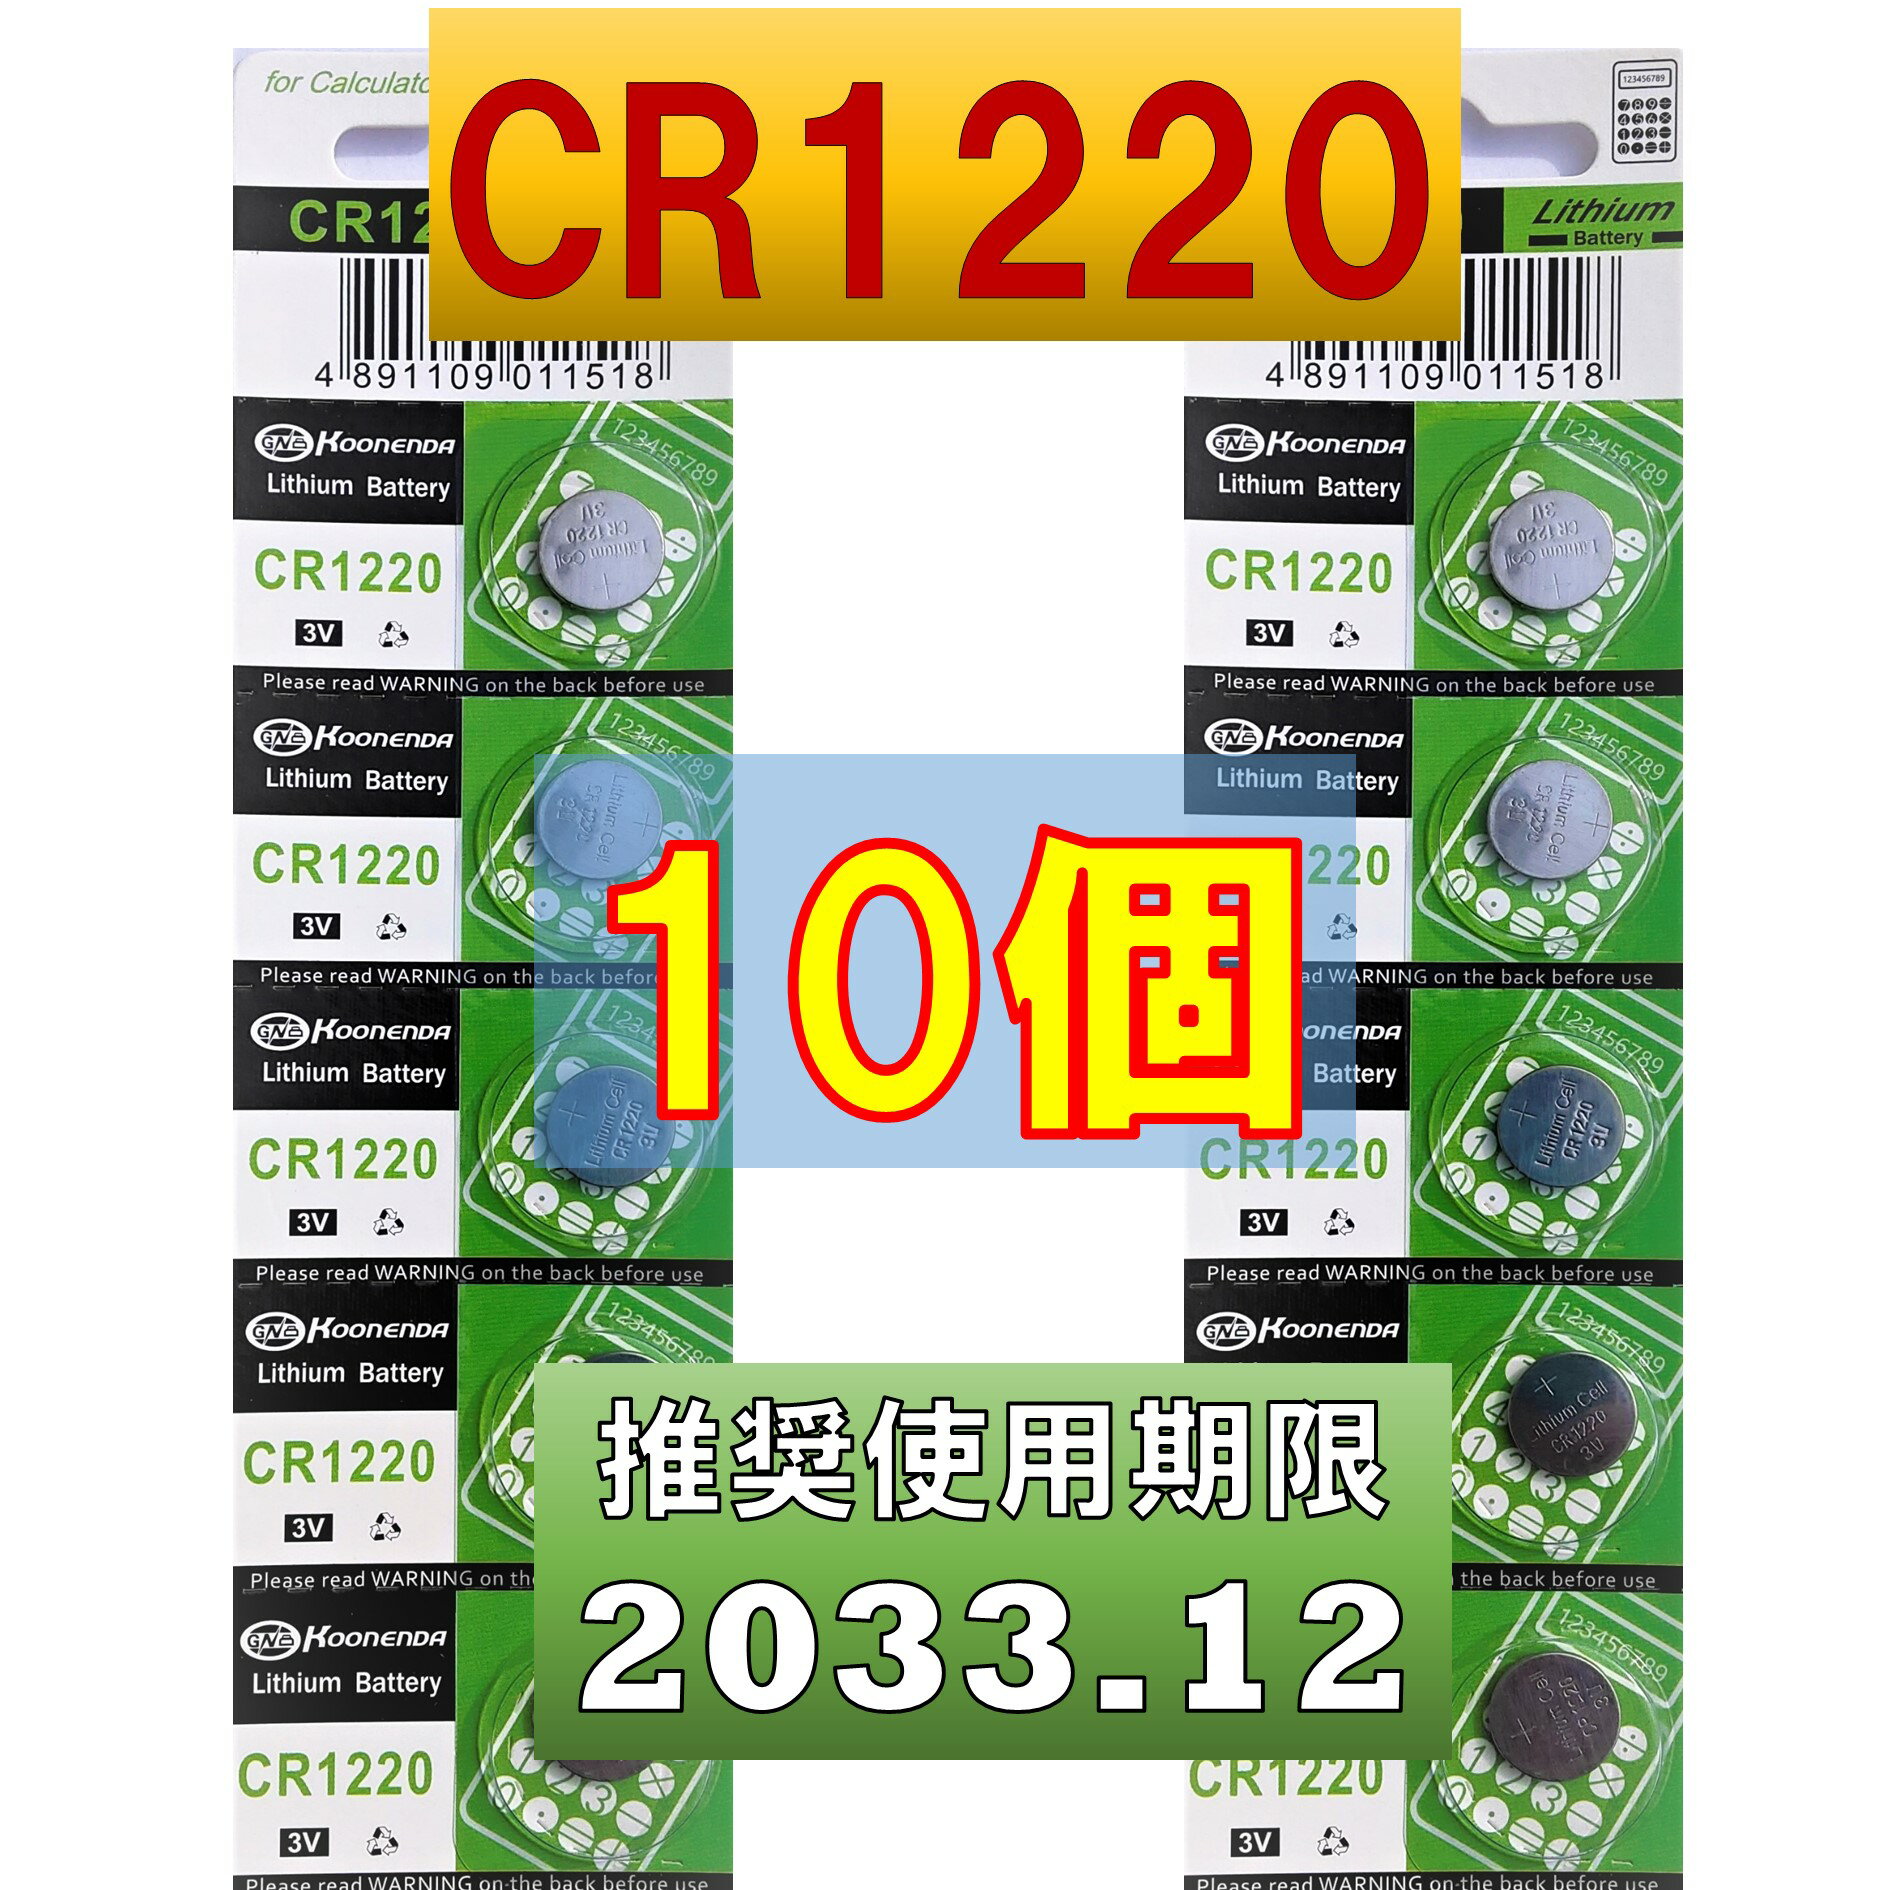 CR1220 `E{^dr 10 gp 2033N12